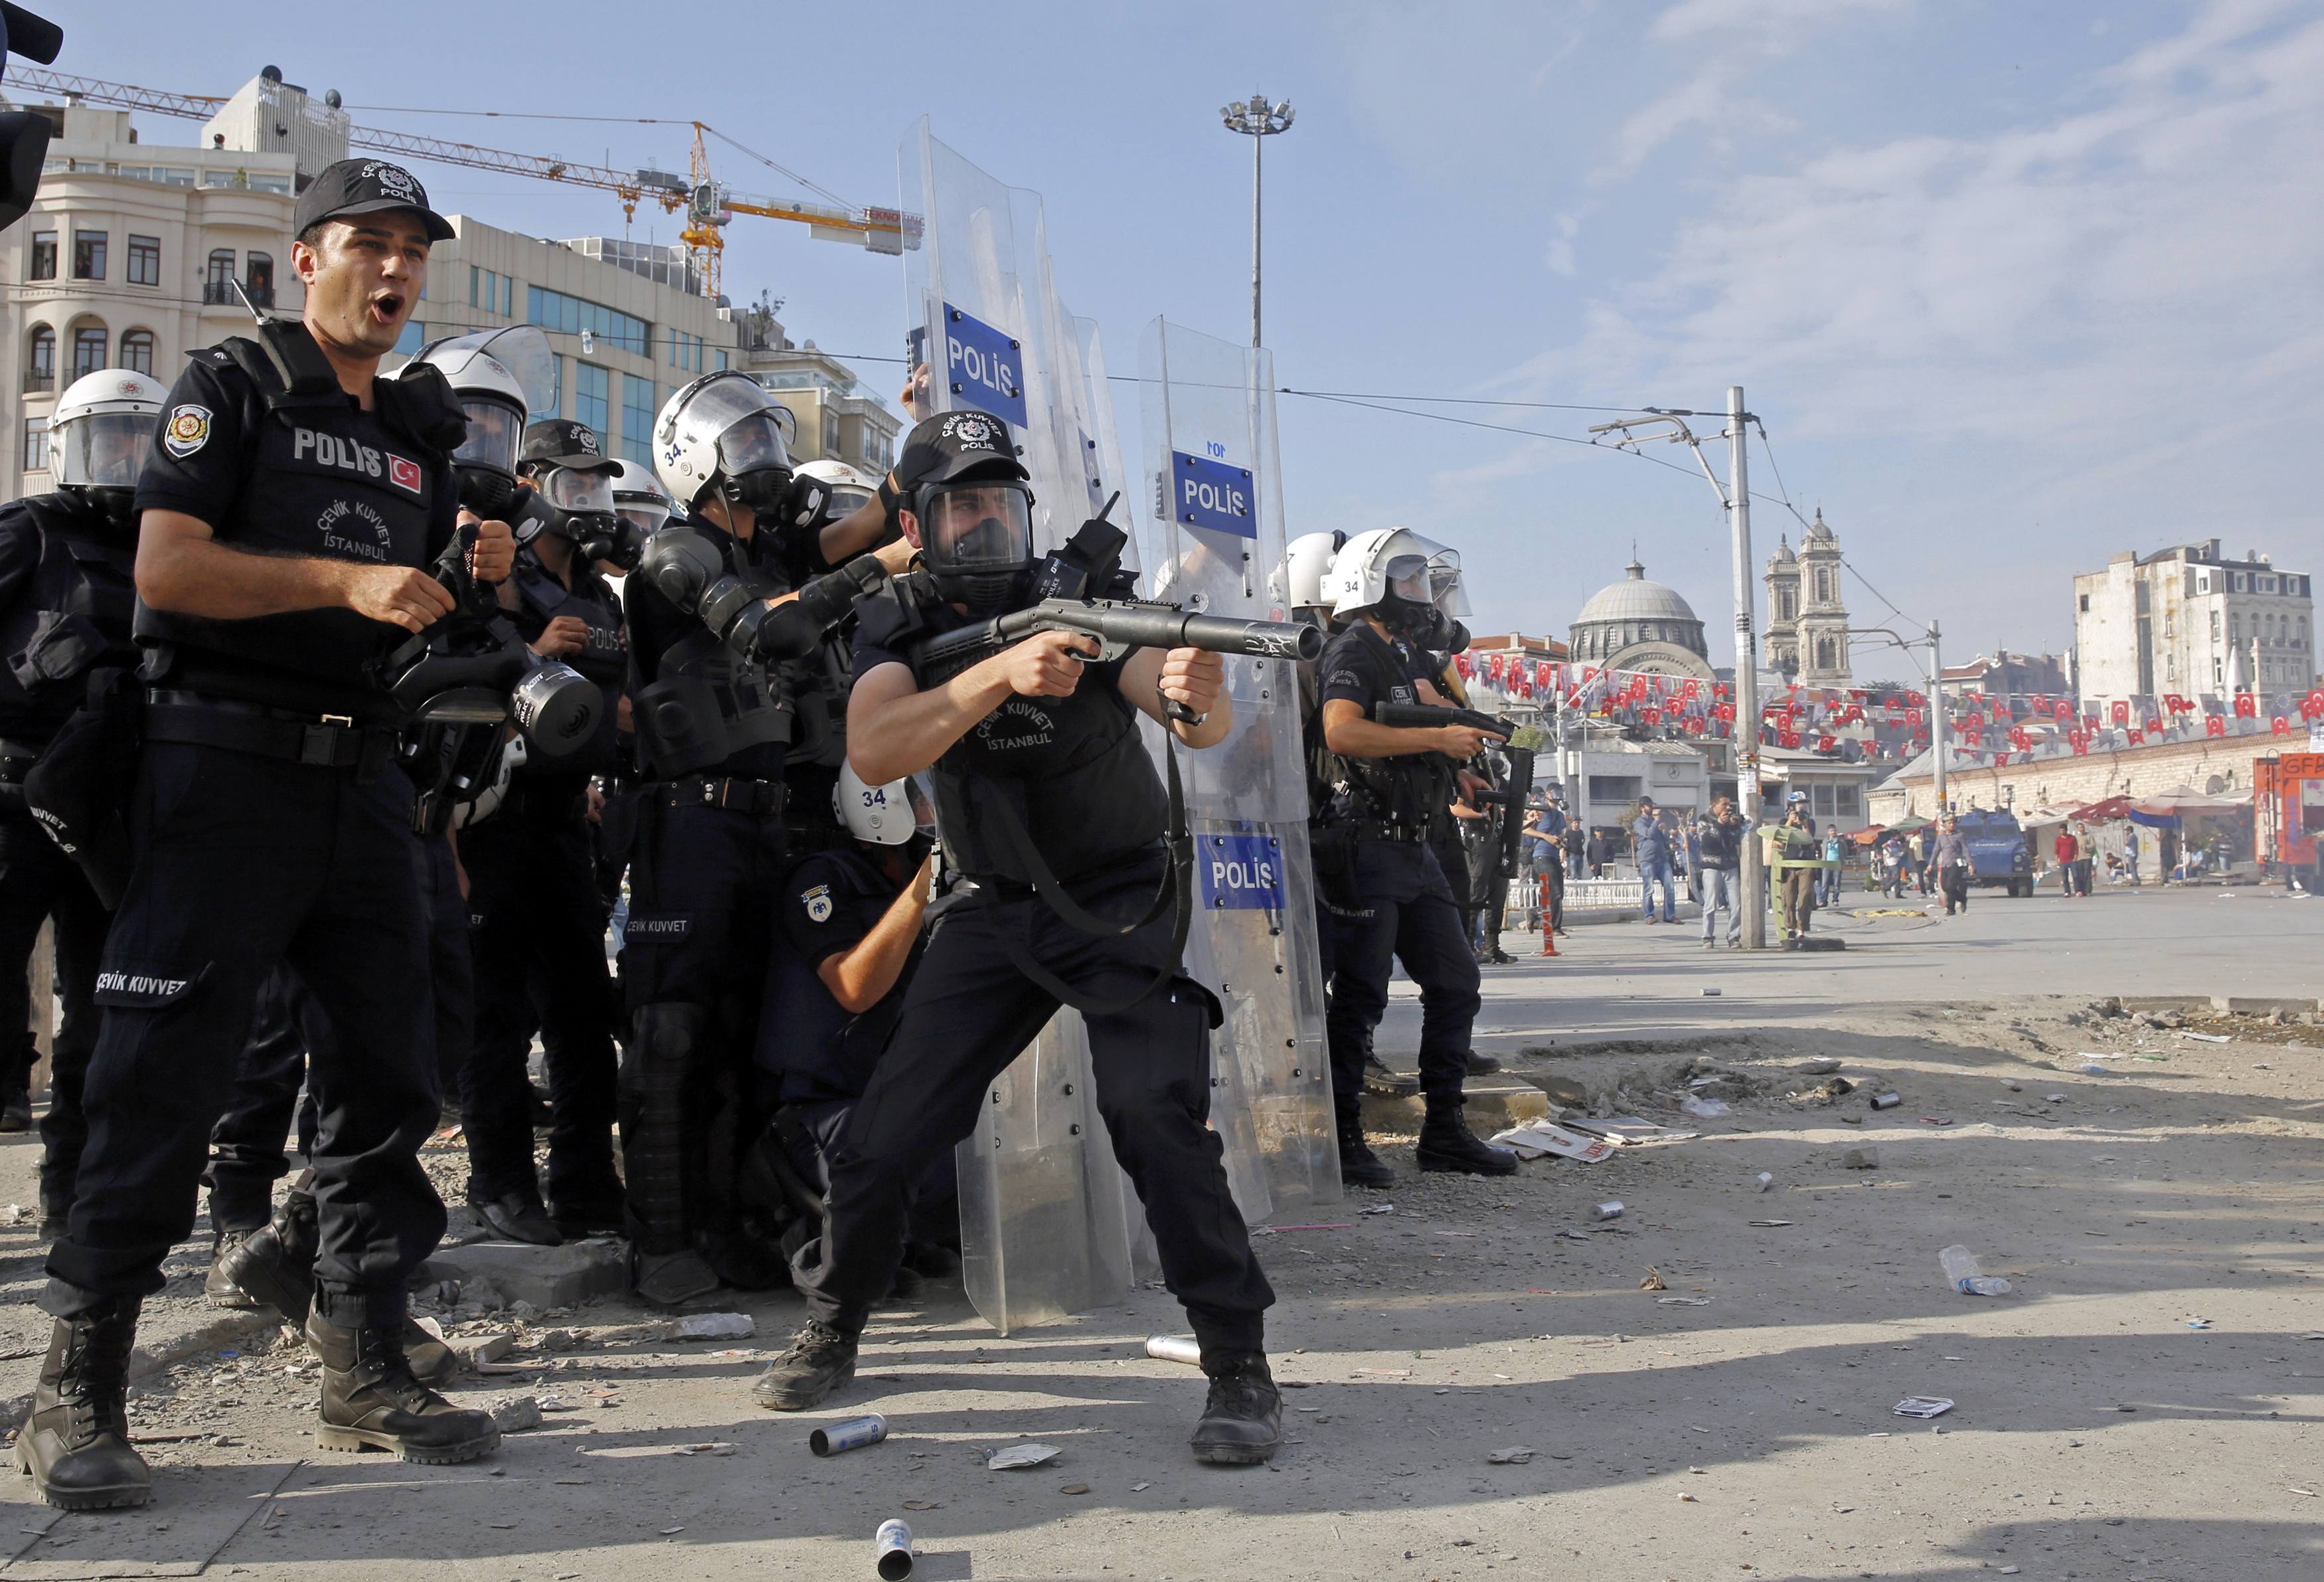 “Αγρίεψε” ο Ερντογάν – Έστειλε τις ειδικές δυνάμεις να “καθαρίσουν” την Ταξίμ – Επιχείρηση της αστυνομίας και επεισόδια τώρα – ΔΕΙΤΕ LIVE